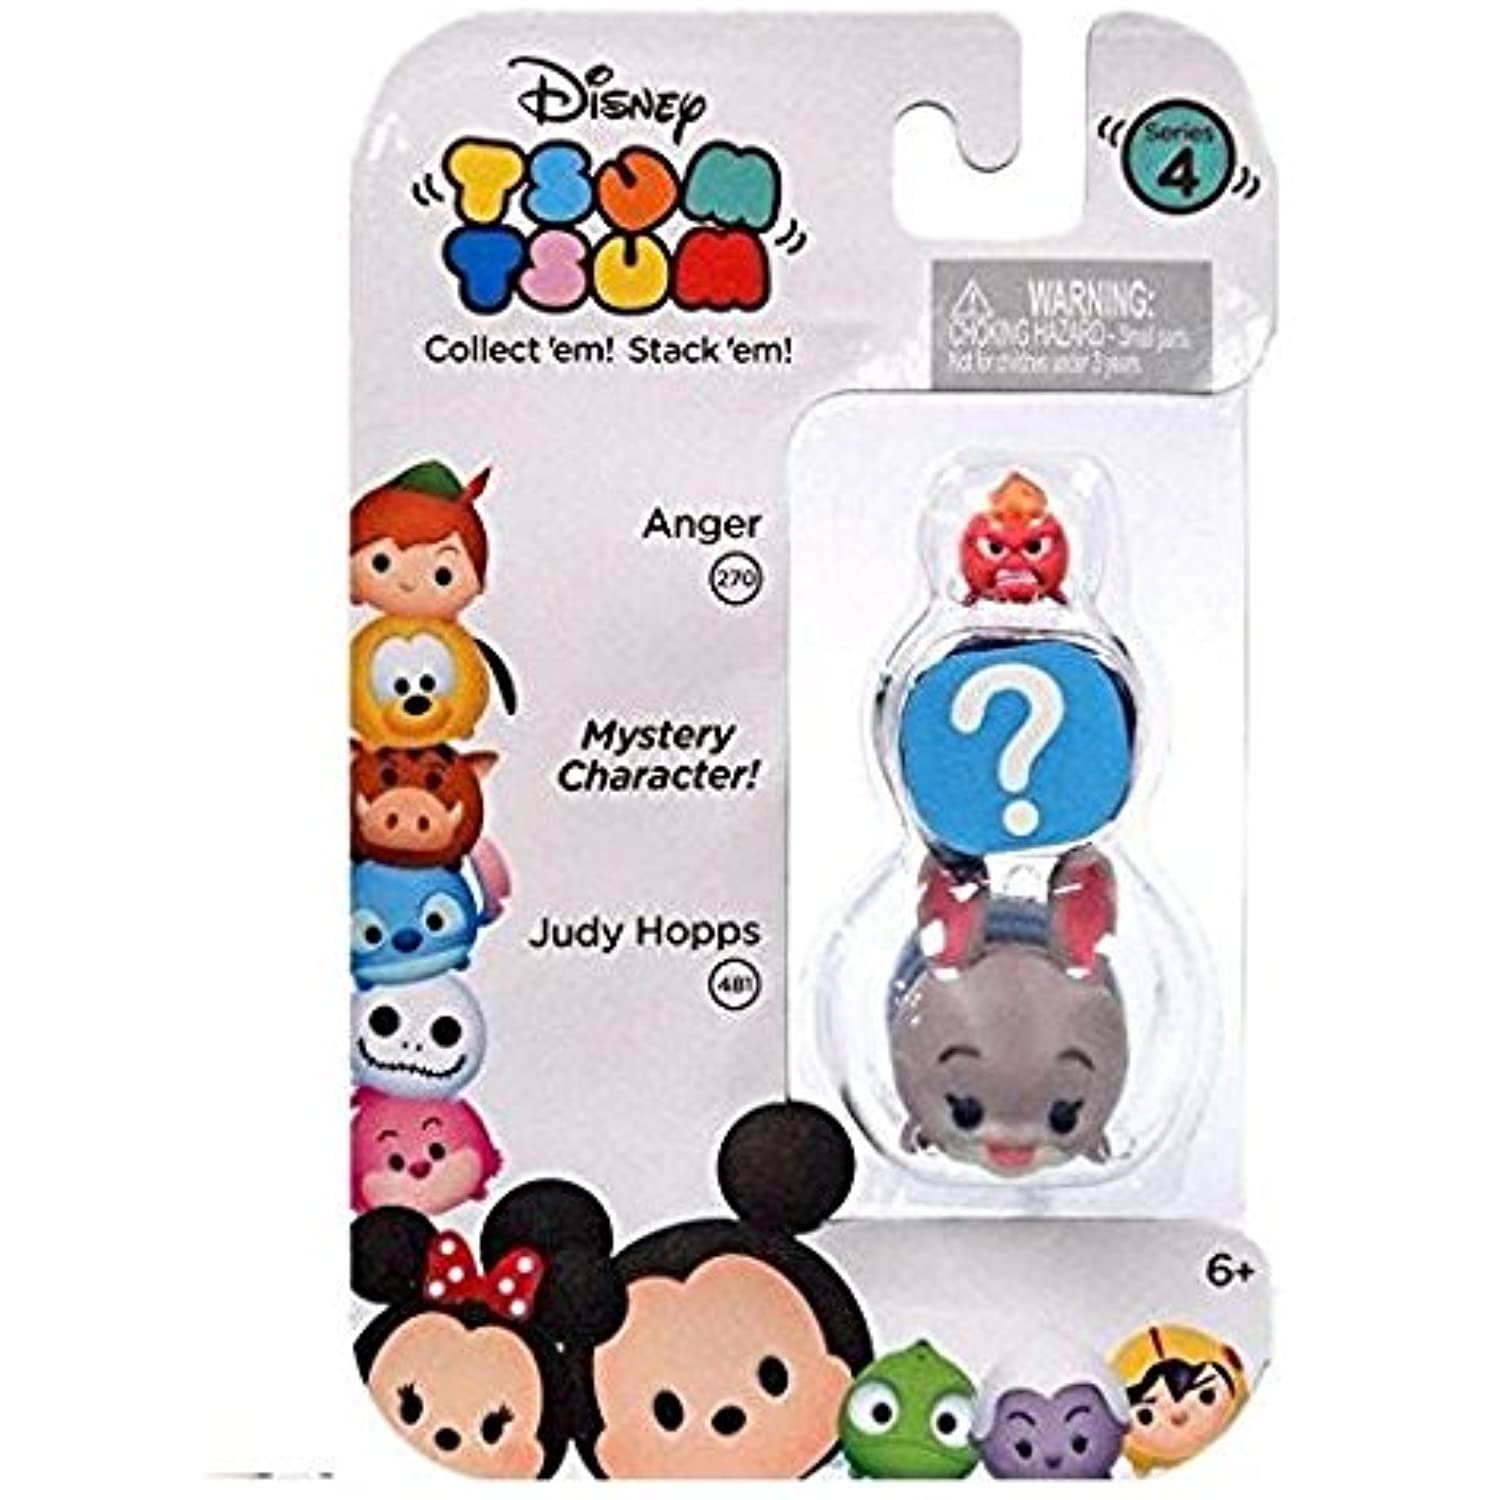 Disney Tsum Tsum Series 4 Anger & Judy Hopps 1" Minifigure 3-Pack